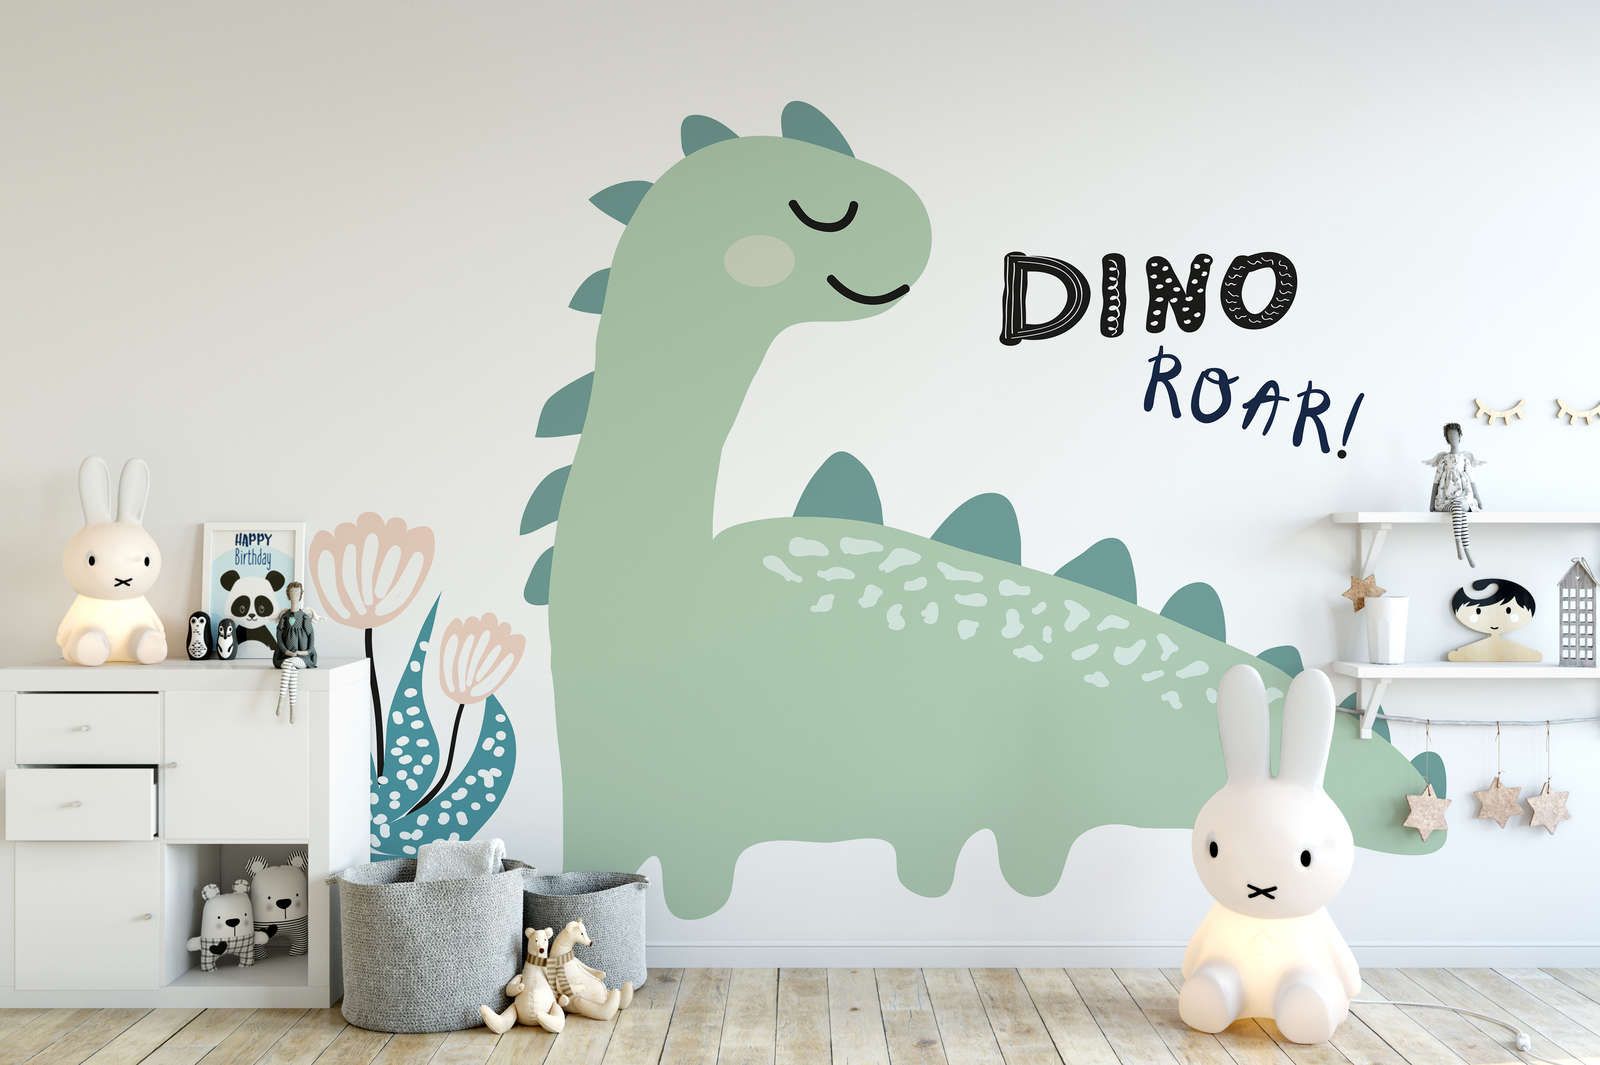             Papel pintado Dinosaurio - Material sin tejer liso y ligero brillante
        